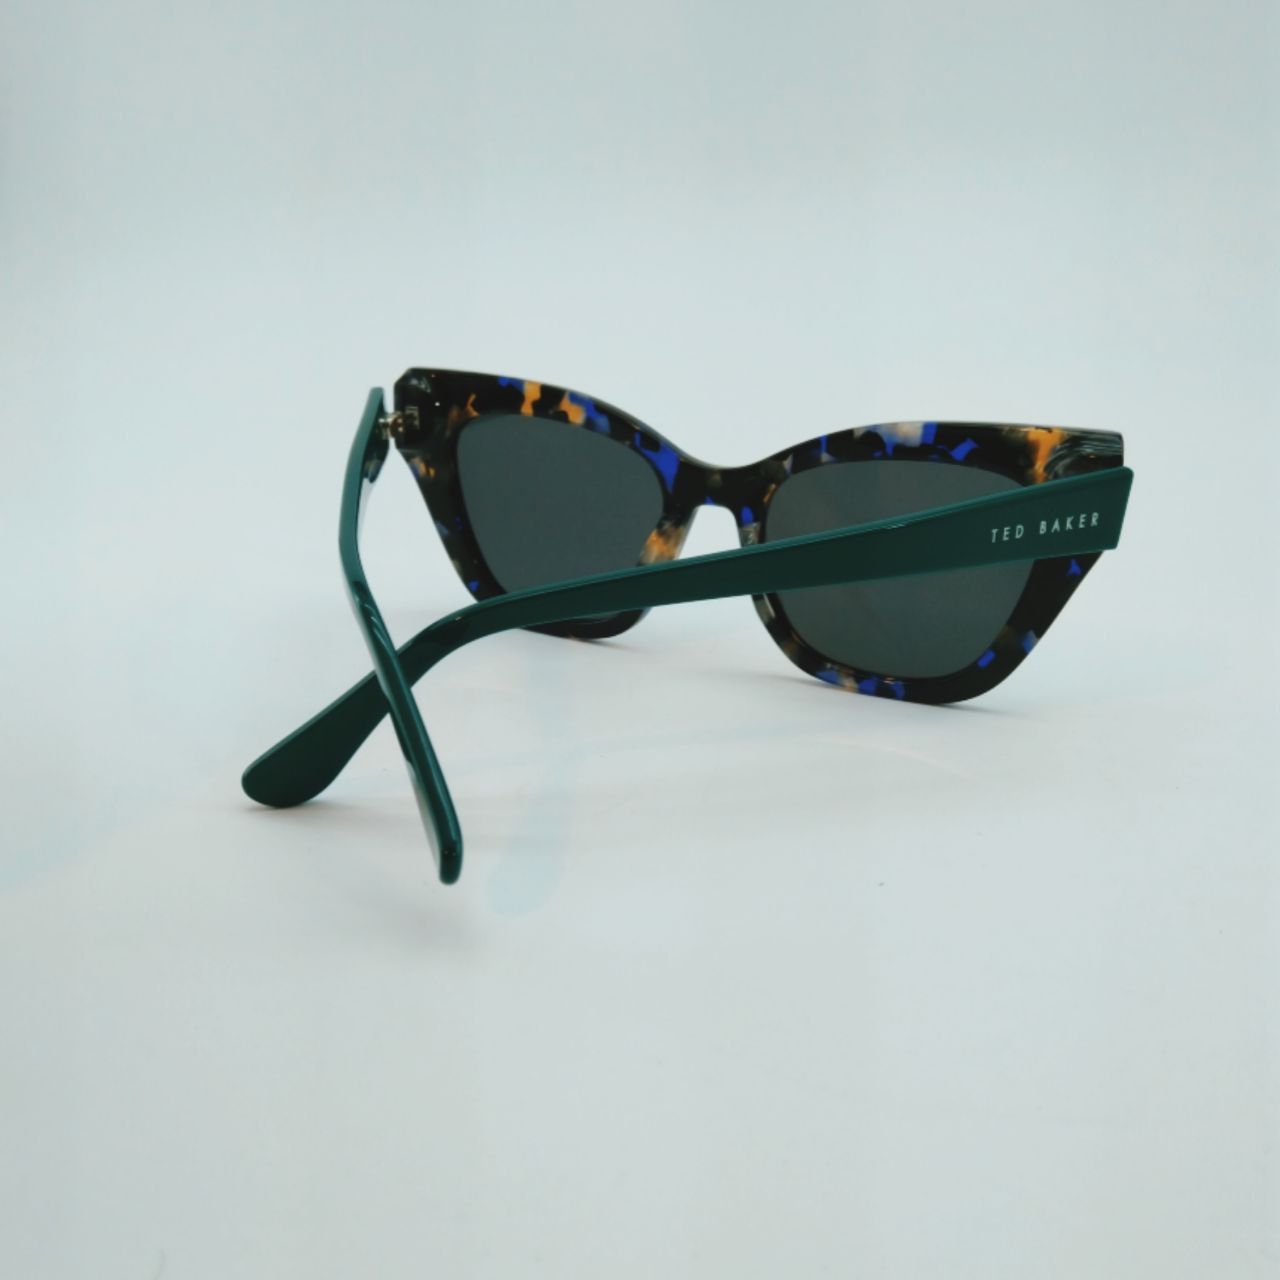 عینک آفتابی زنانه تد بیکر مدل FG1226 C4 -  - 7